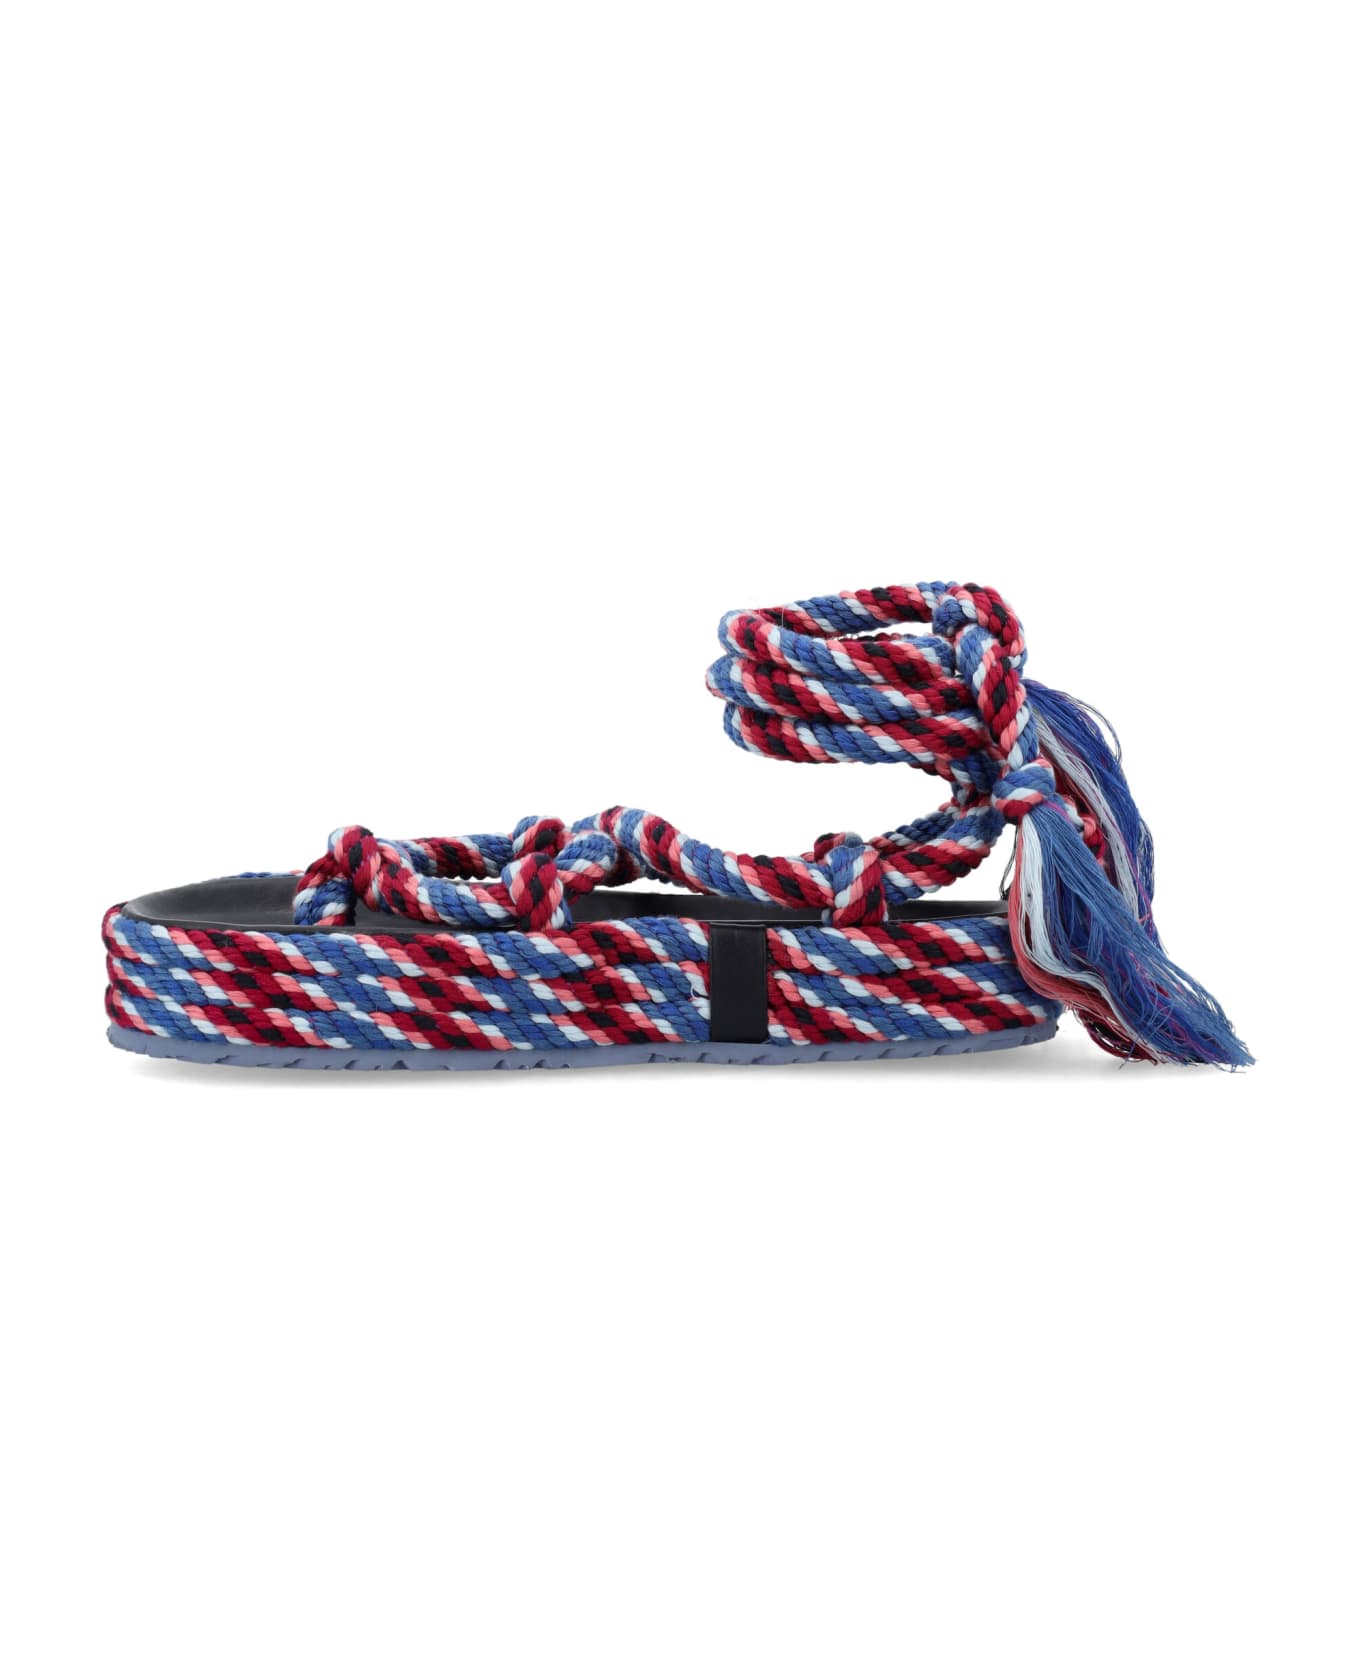 Isabel Marant Erol Rope Sandals - BLUE PINK